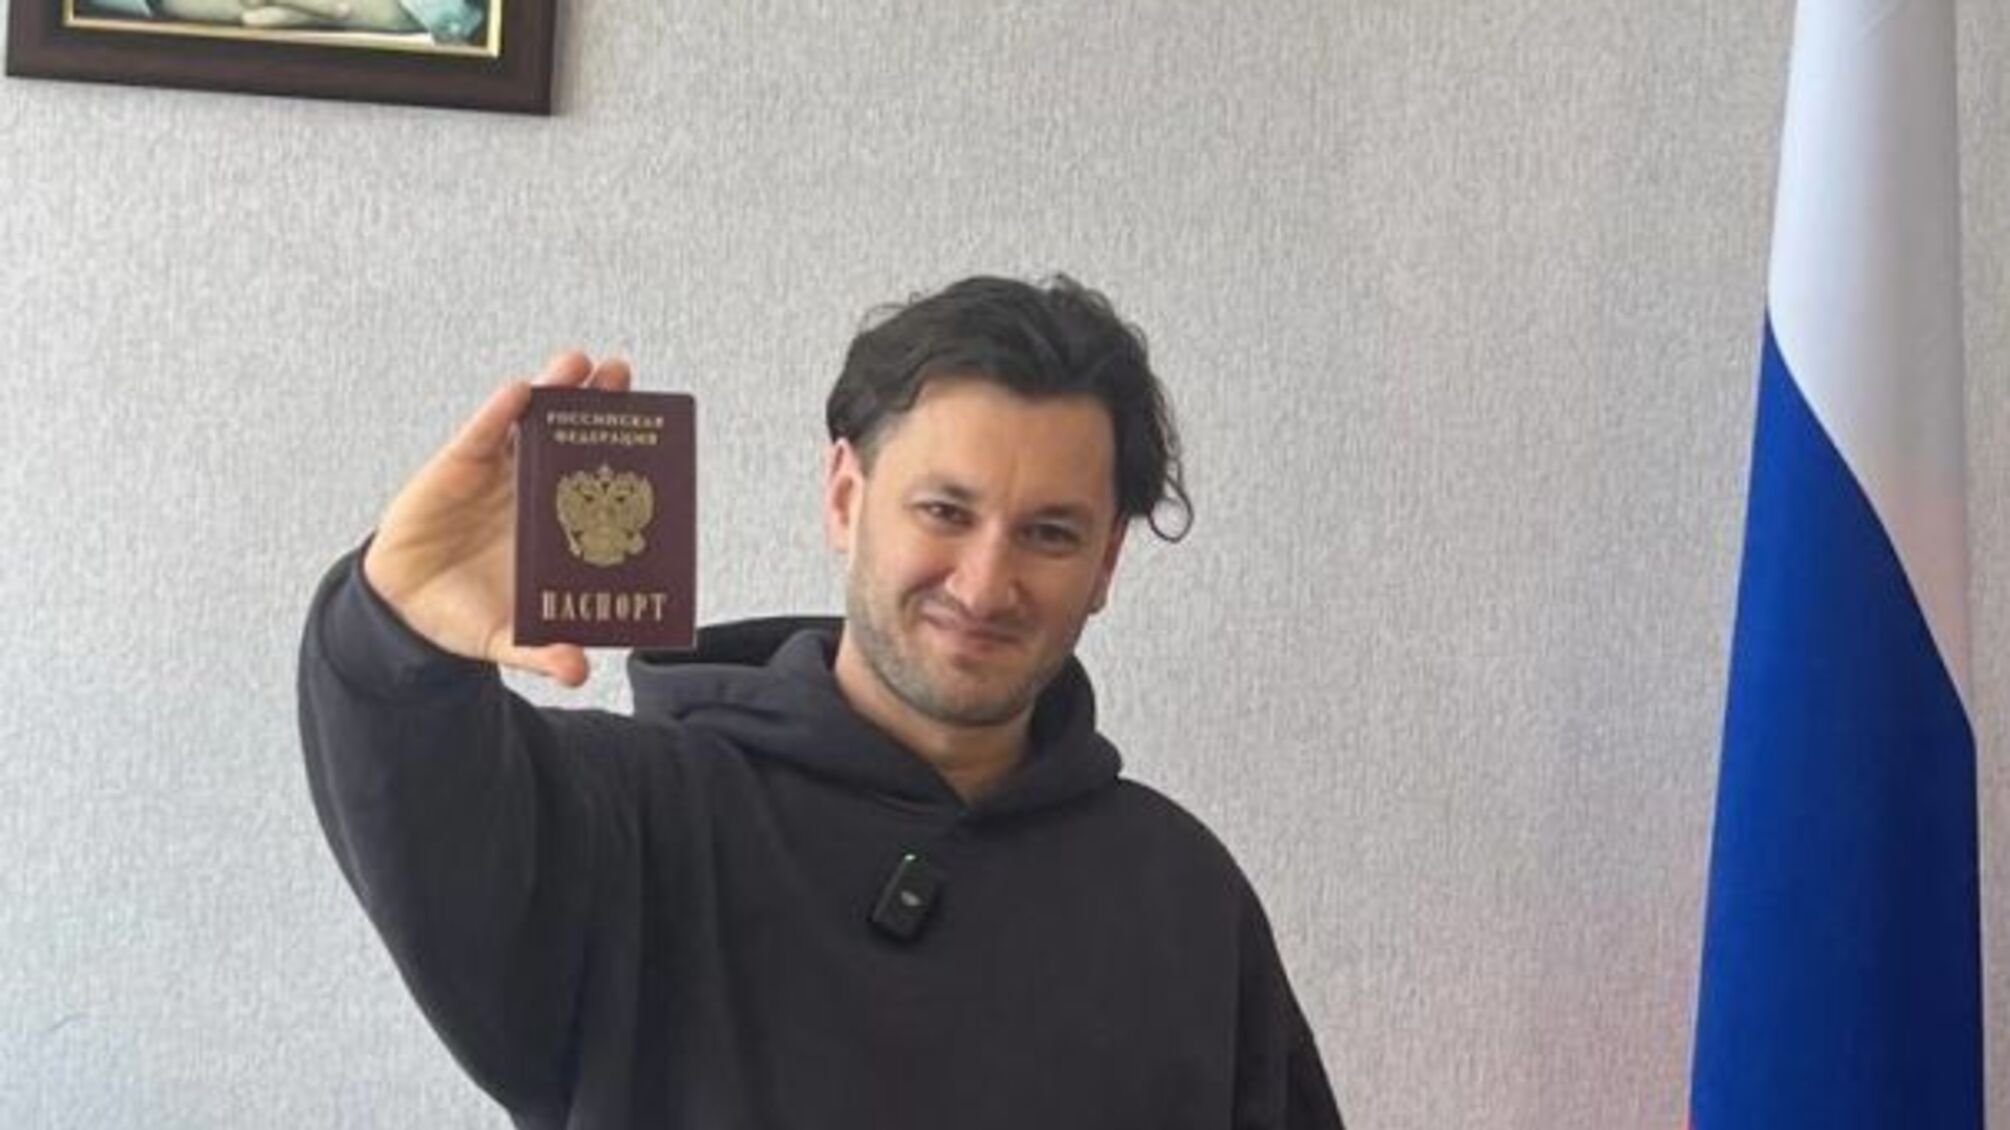 Предатель Бардаш сменил имя и похвастался российским паспортом под портретом путина